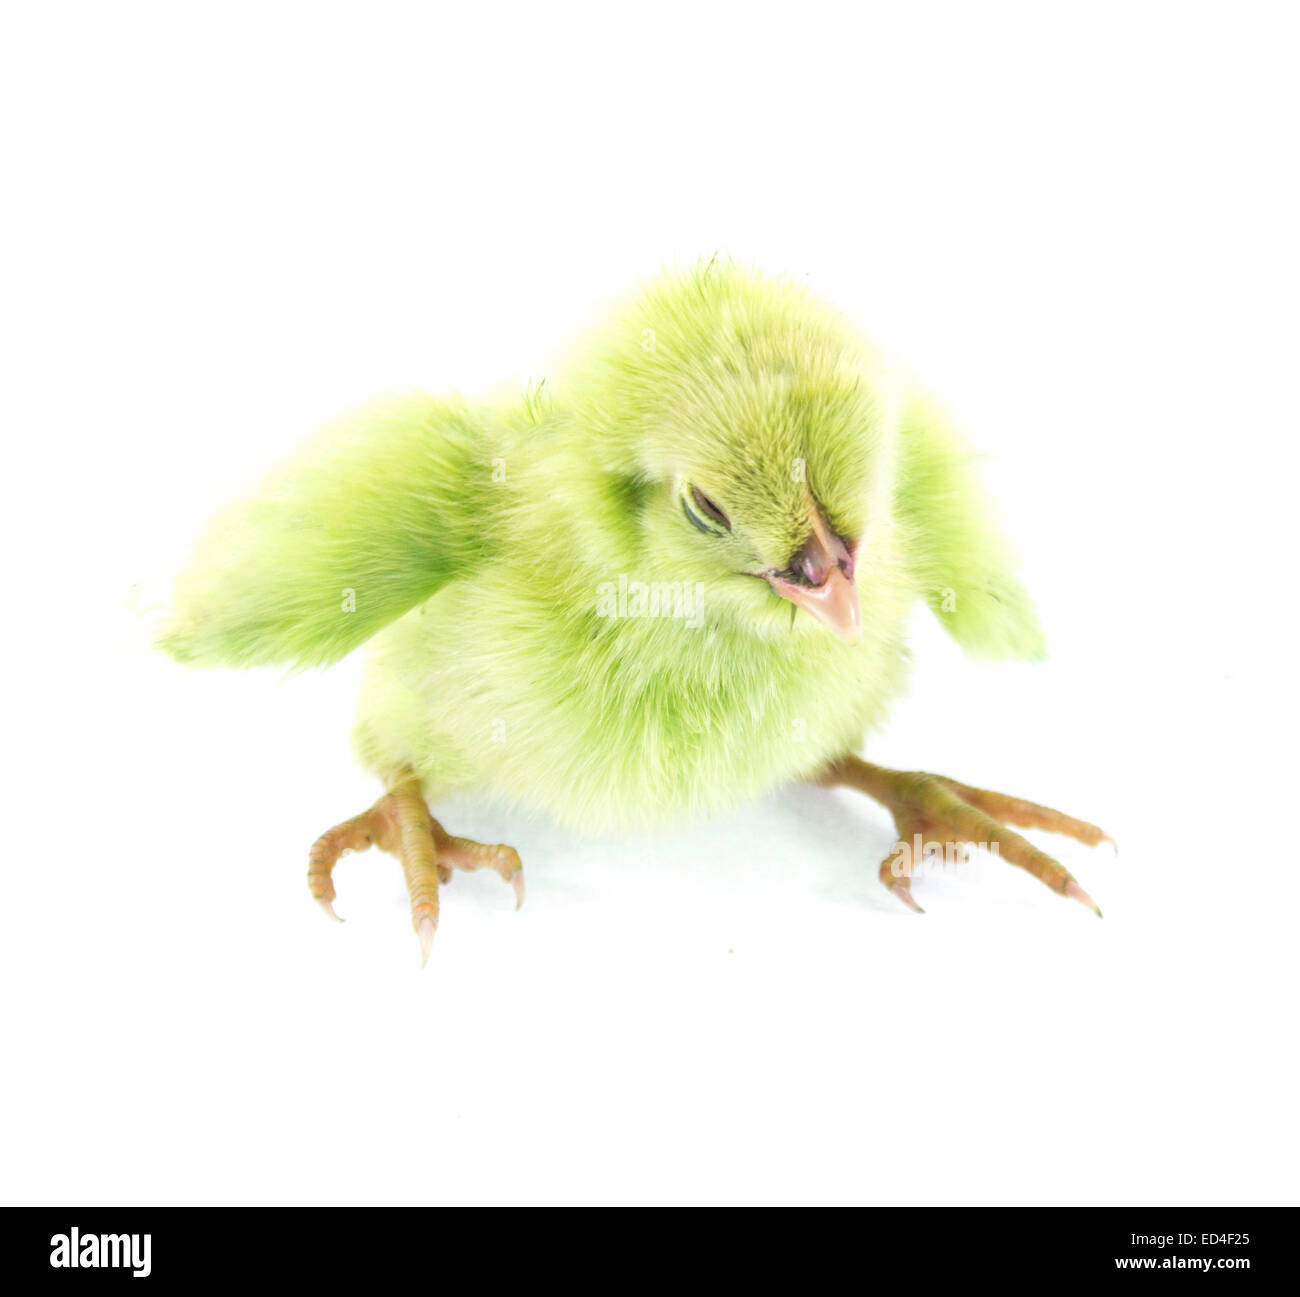 Little Green live animal poulet isolé sur fond blanc Banque D'Images